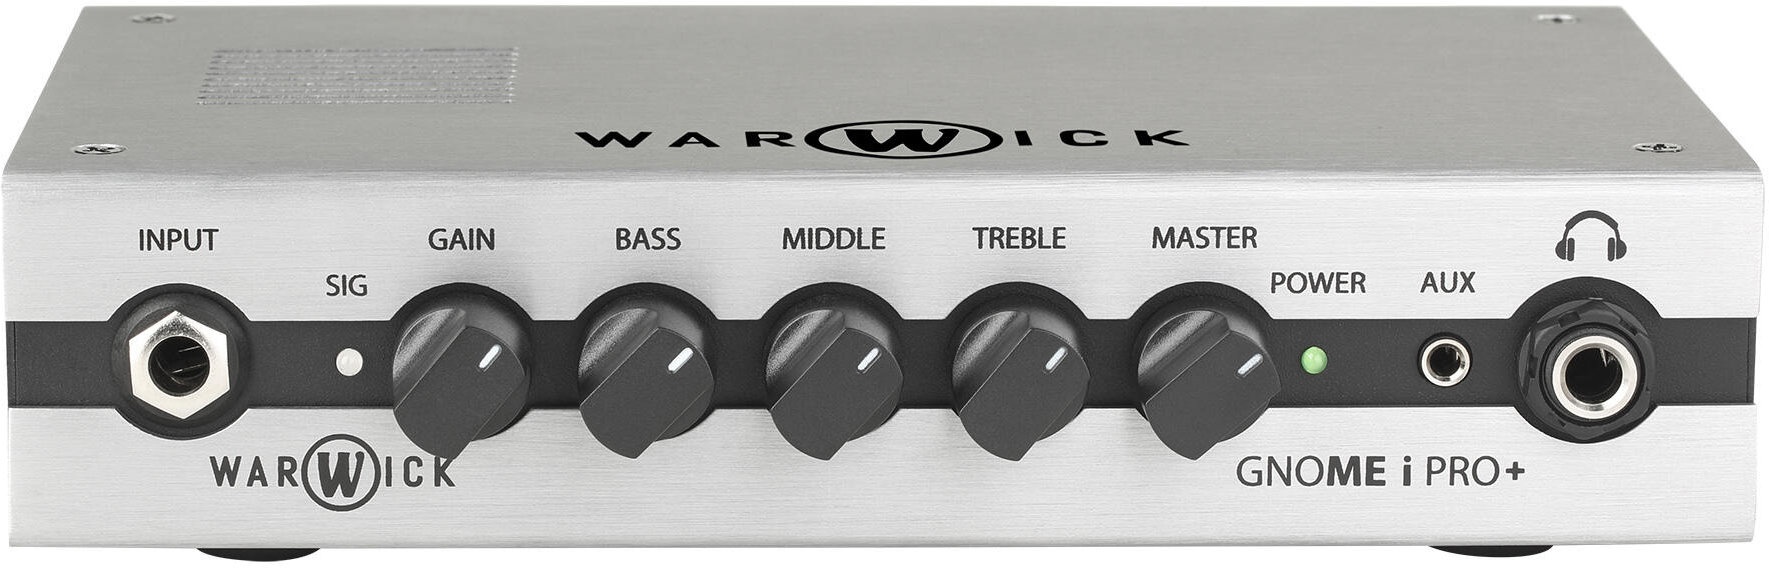 Warwick Gnome i Pro V2 Bass Topteil mit USB-Interface